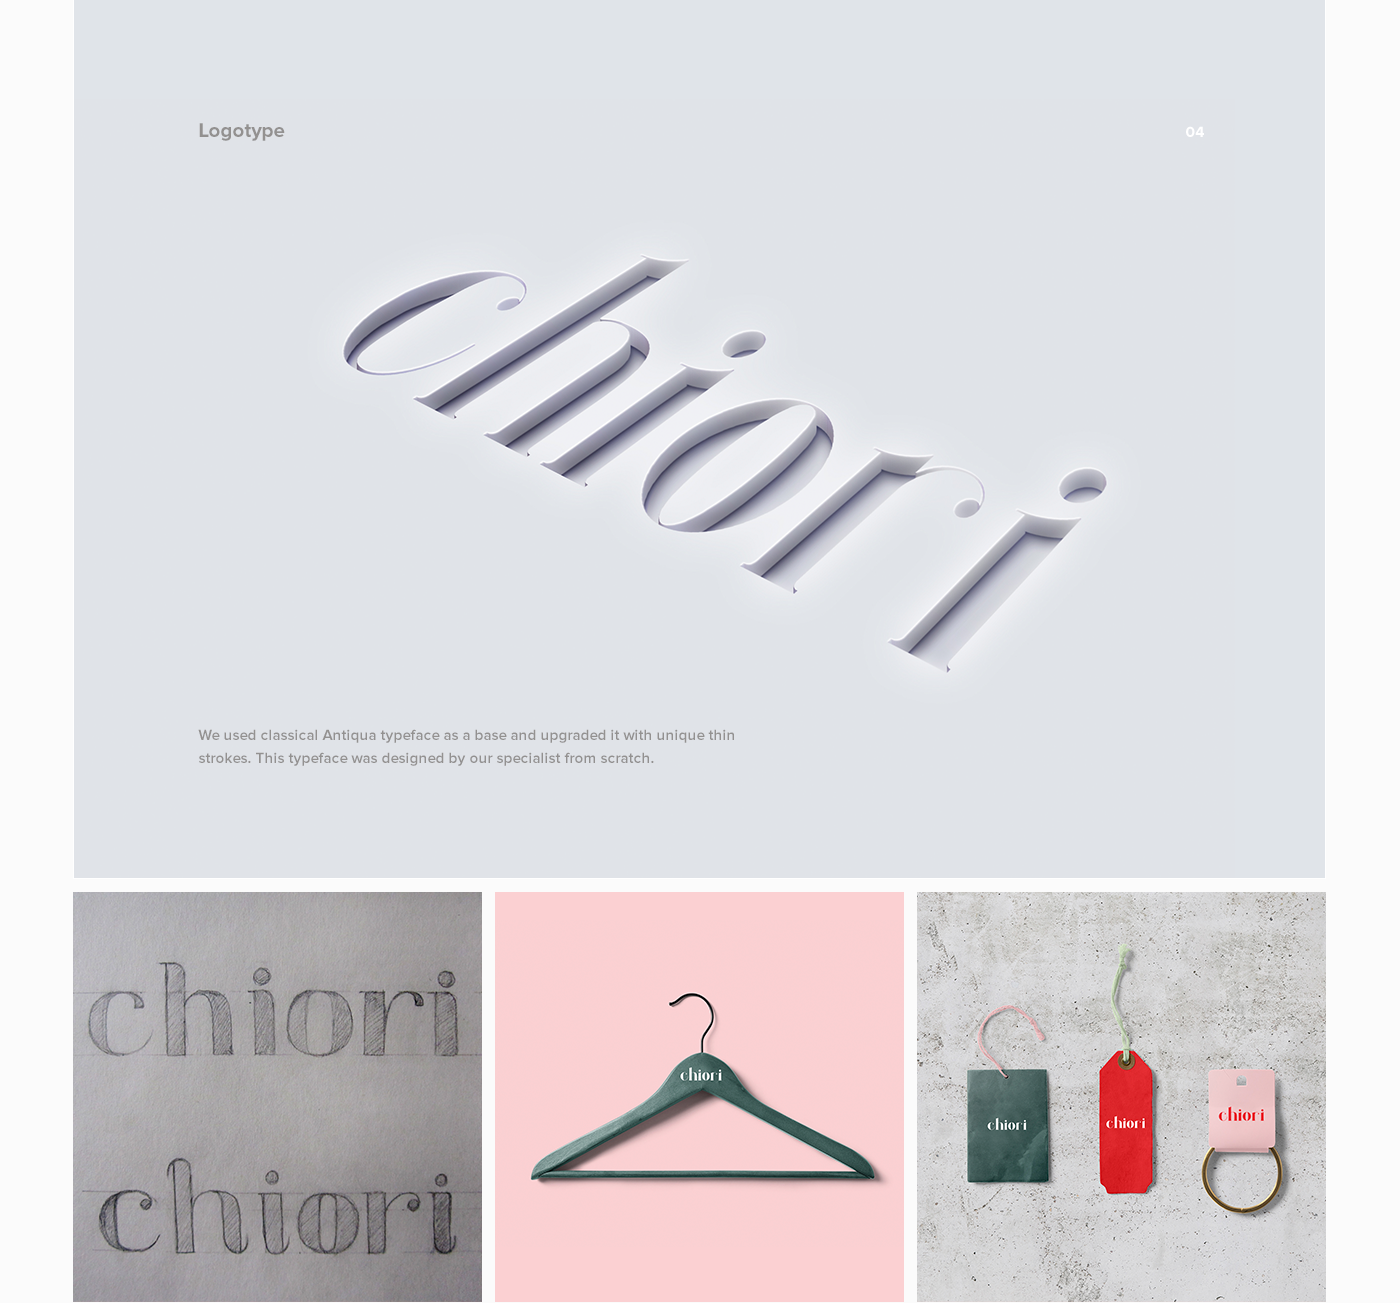 e-commerce shop UI ux Web desktop mobile minimal clean inspire